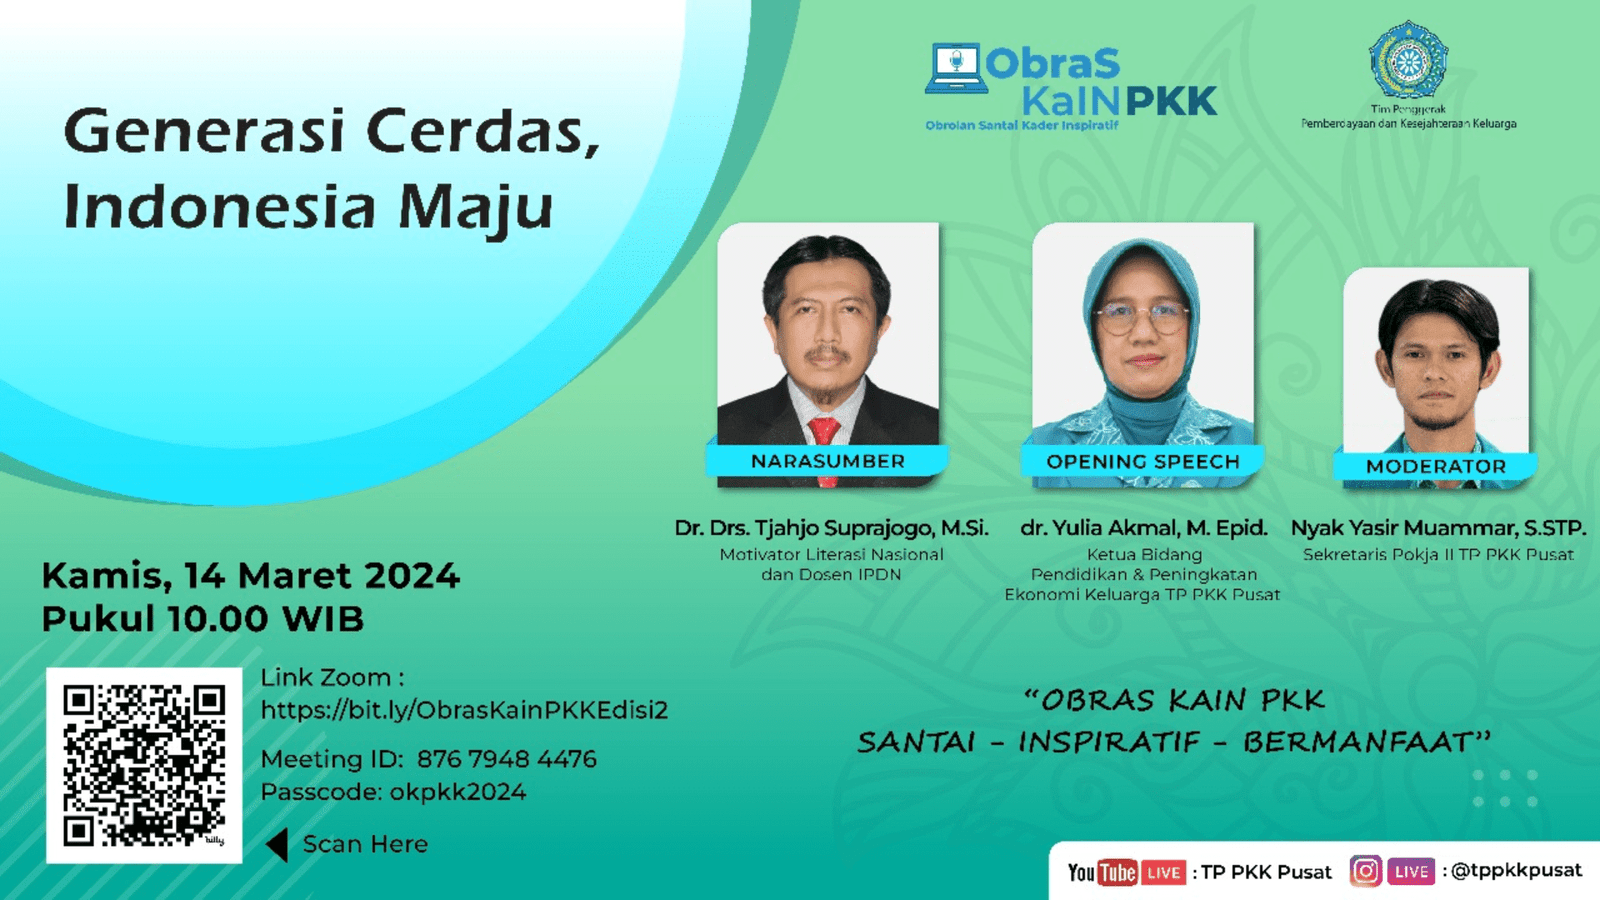 Obras Kain PKK Edisi 02 tahun 2024, dengan tema Generasi Cerdas, Indonesia Maju – 14 Maret 2024